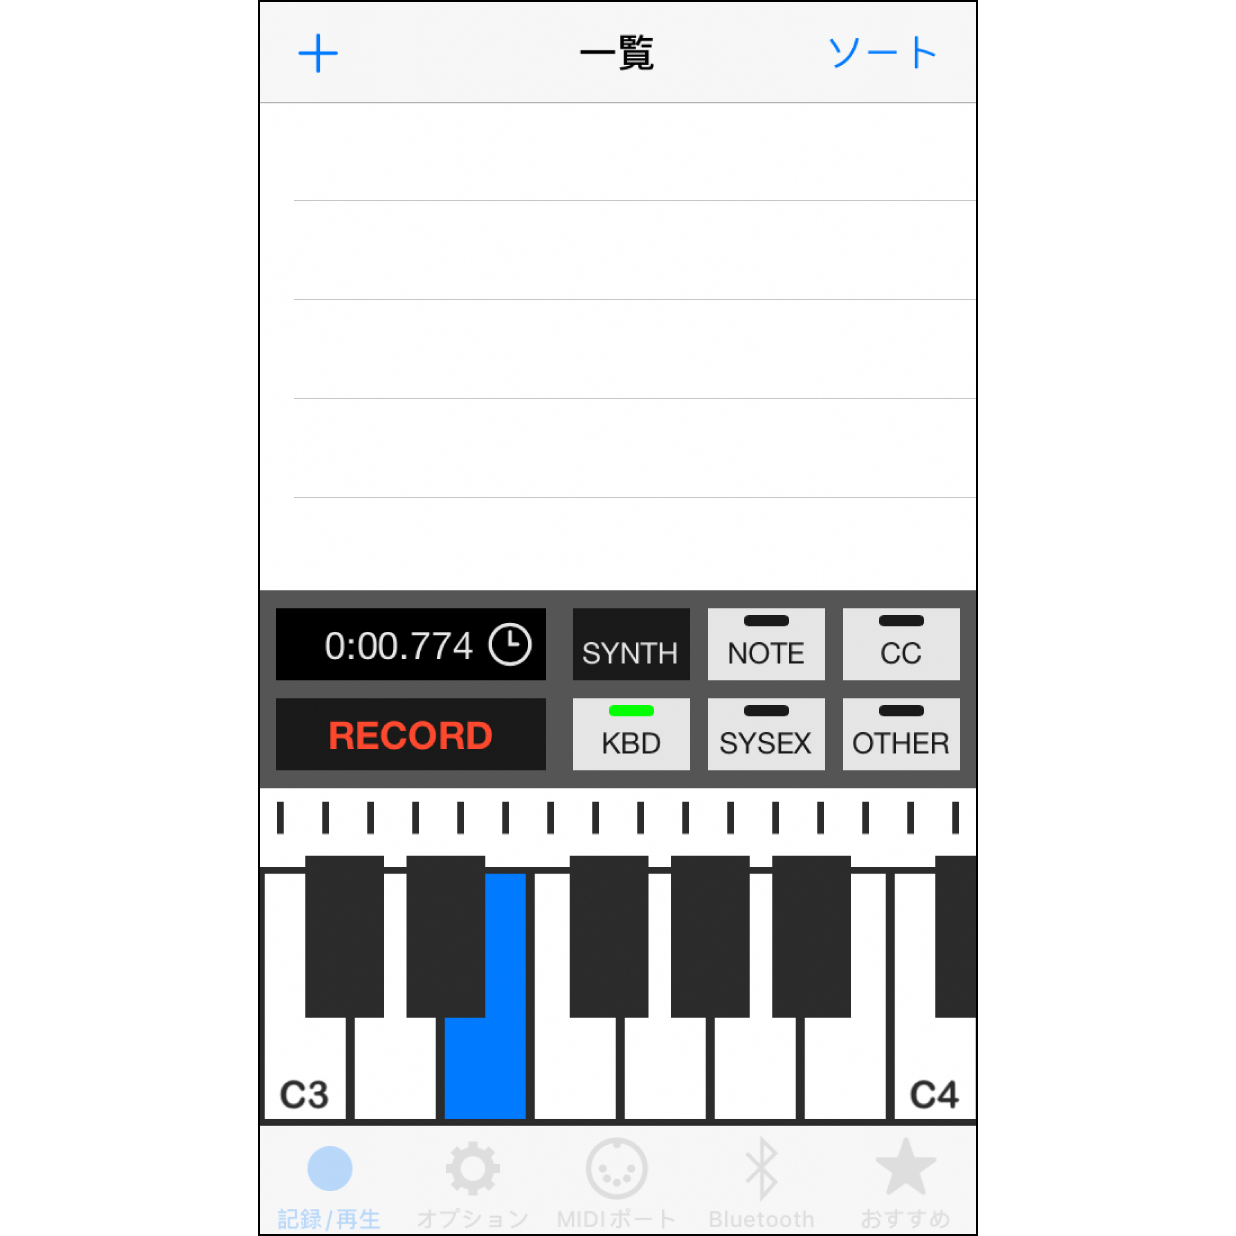 4. 画面のキーボードから曲を演奏画面に表示されたキーボードを操作してメロディを奏でれば、リアルタイムでMuro Boxがそのメロディを演奏します。